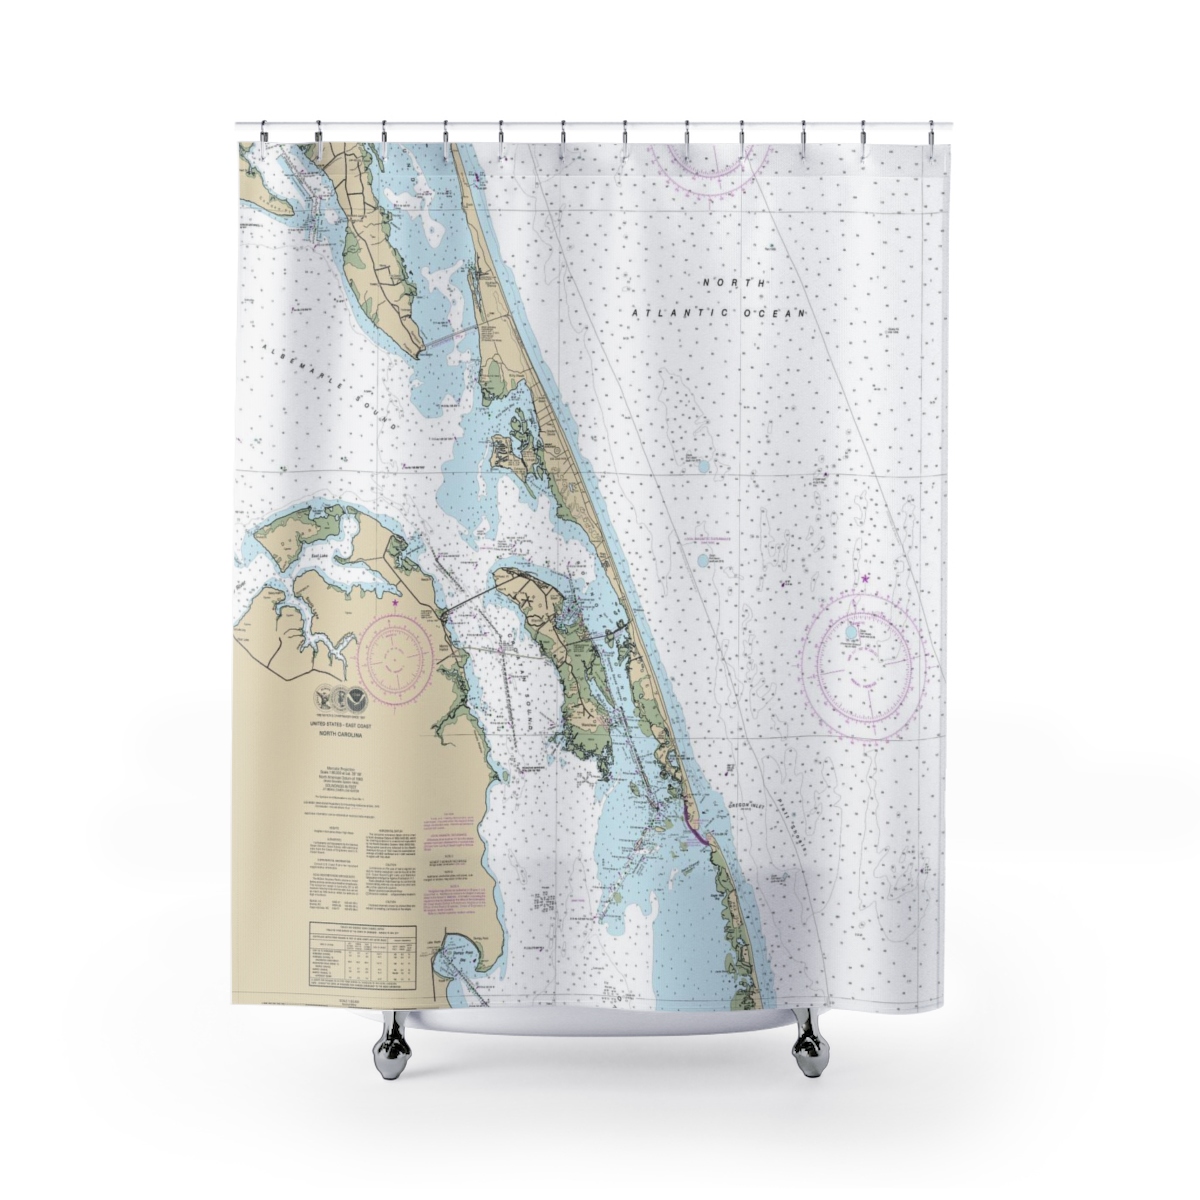 Oregon Inlet Navigation Chart